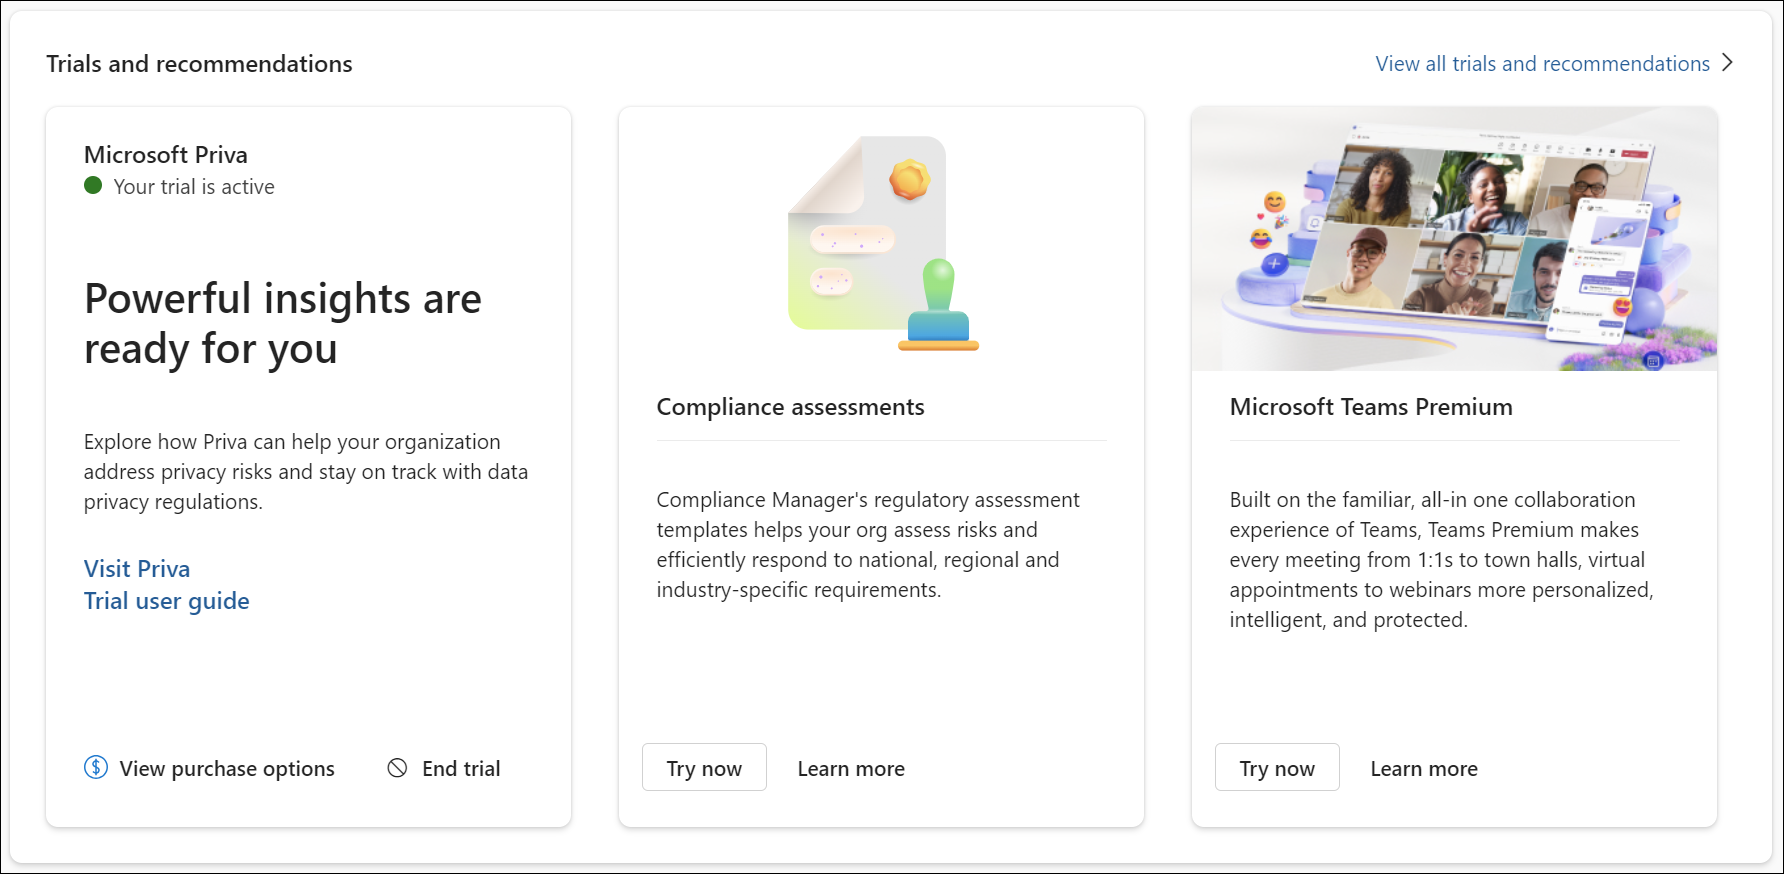 Tarjeta de recomendaciones y pruebas del portal de Microsoft Purview.